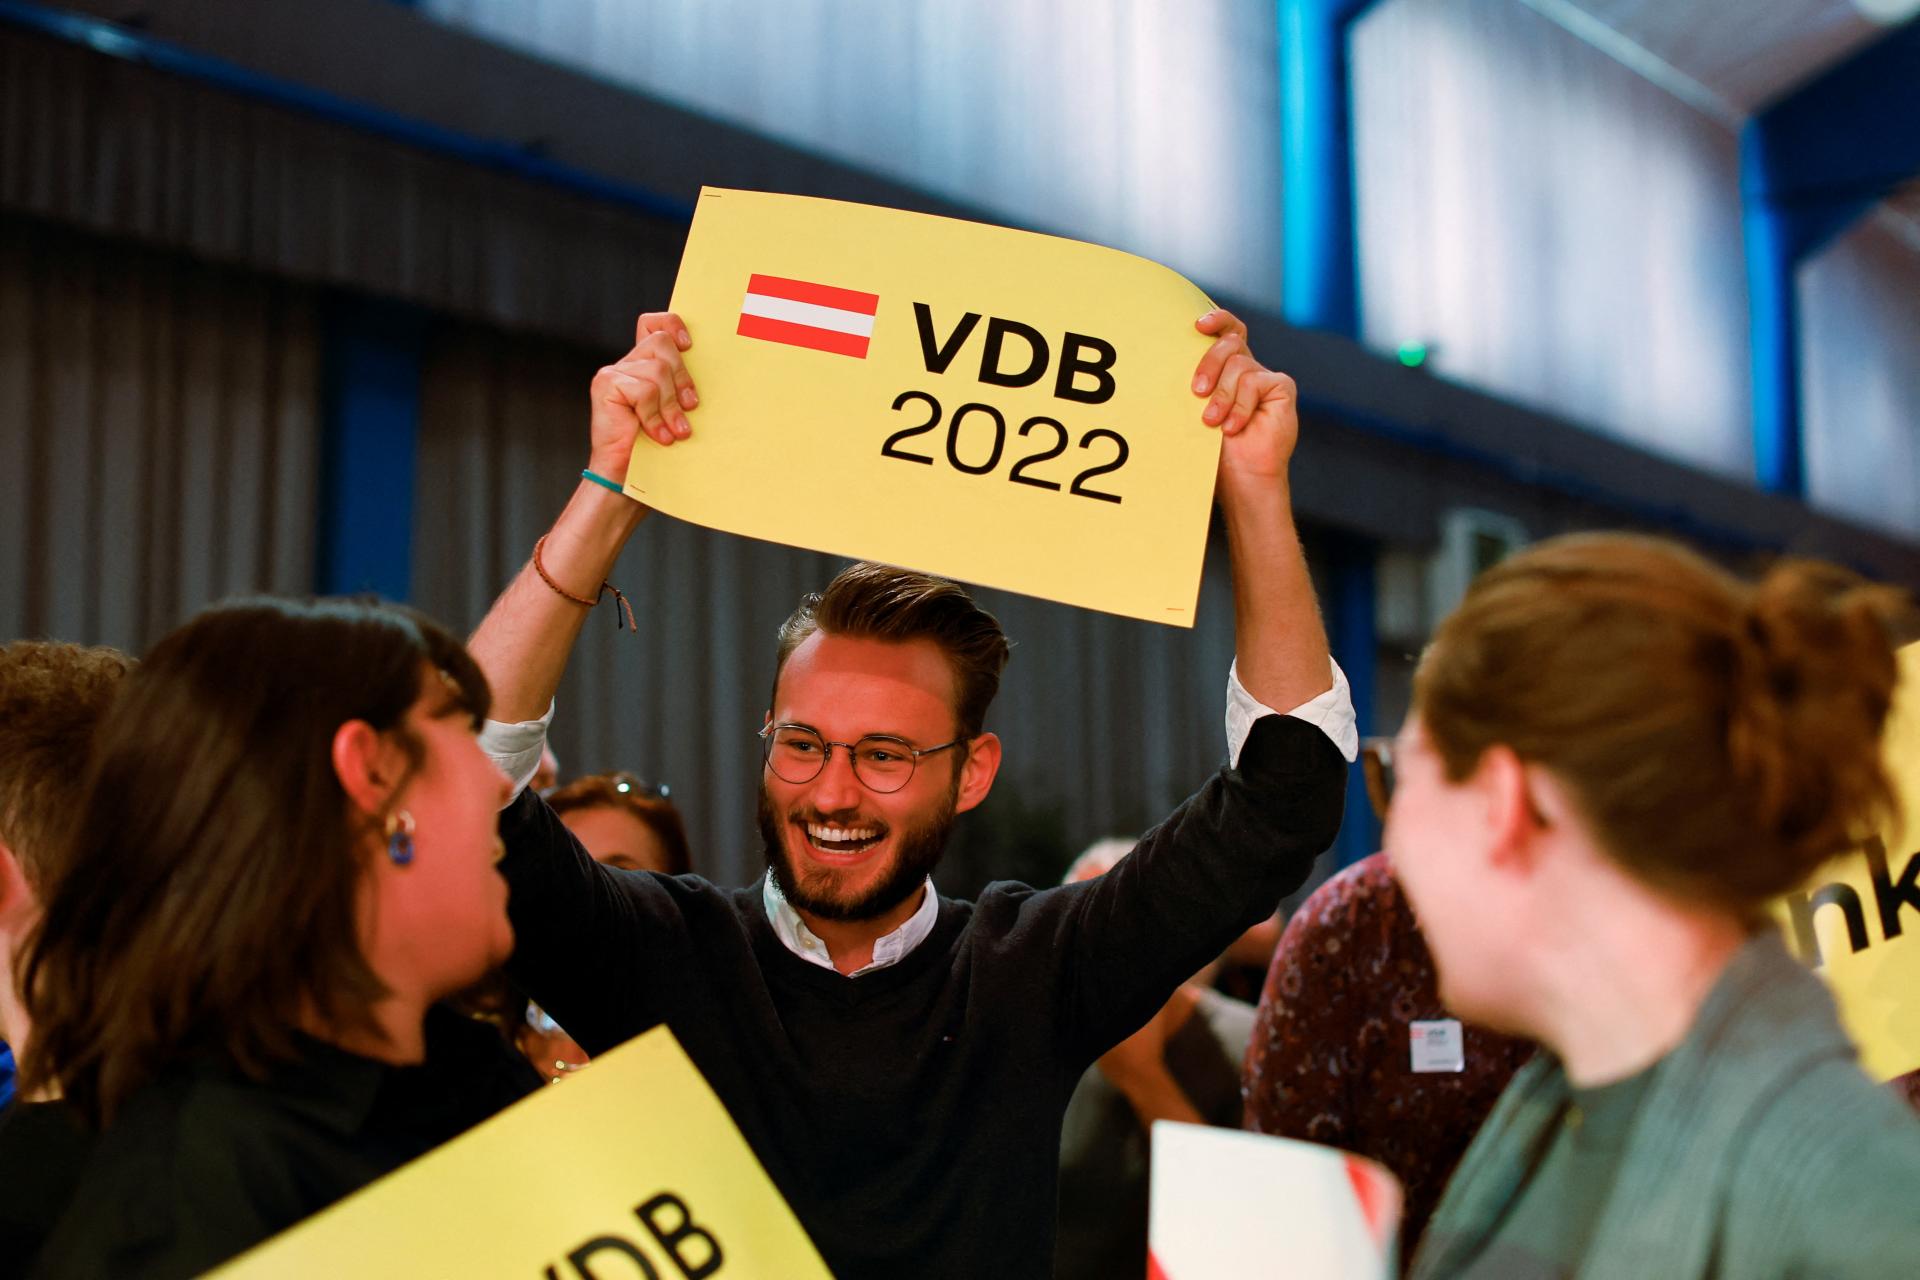 Van der Bellen podľa odhadov zvíťazil v rakúskych prezidentských voľbách